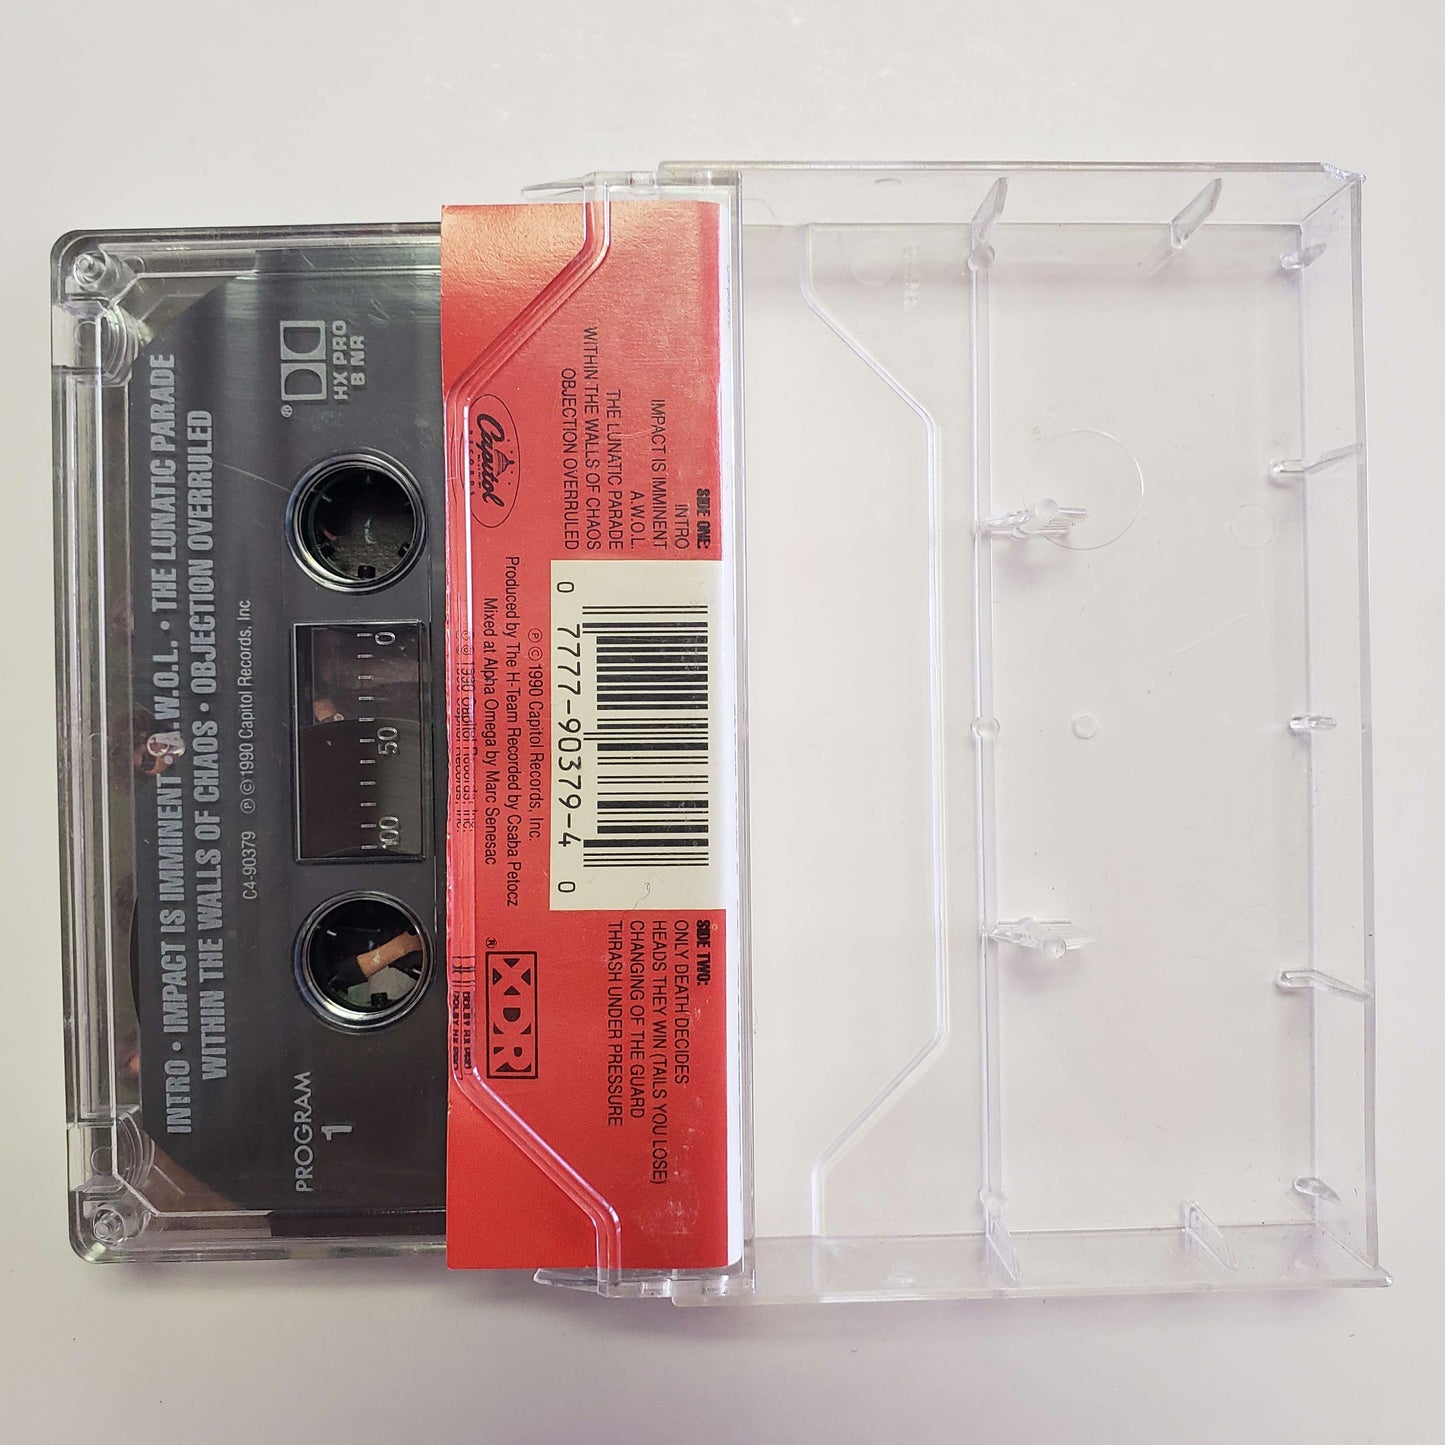 Exodus - Impact is Imminent original cassette tape